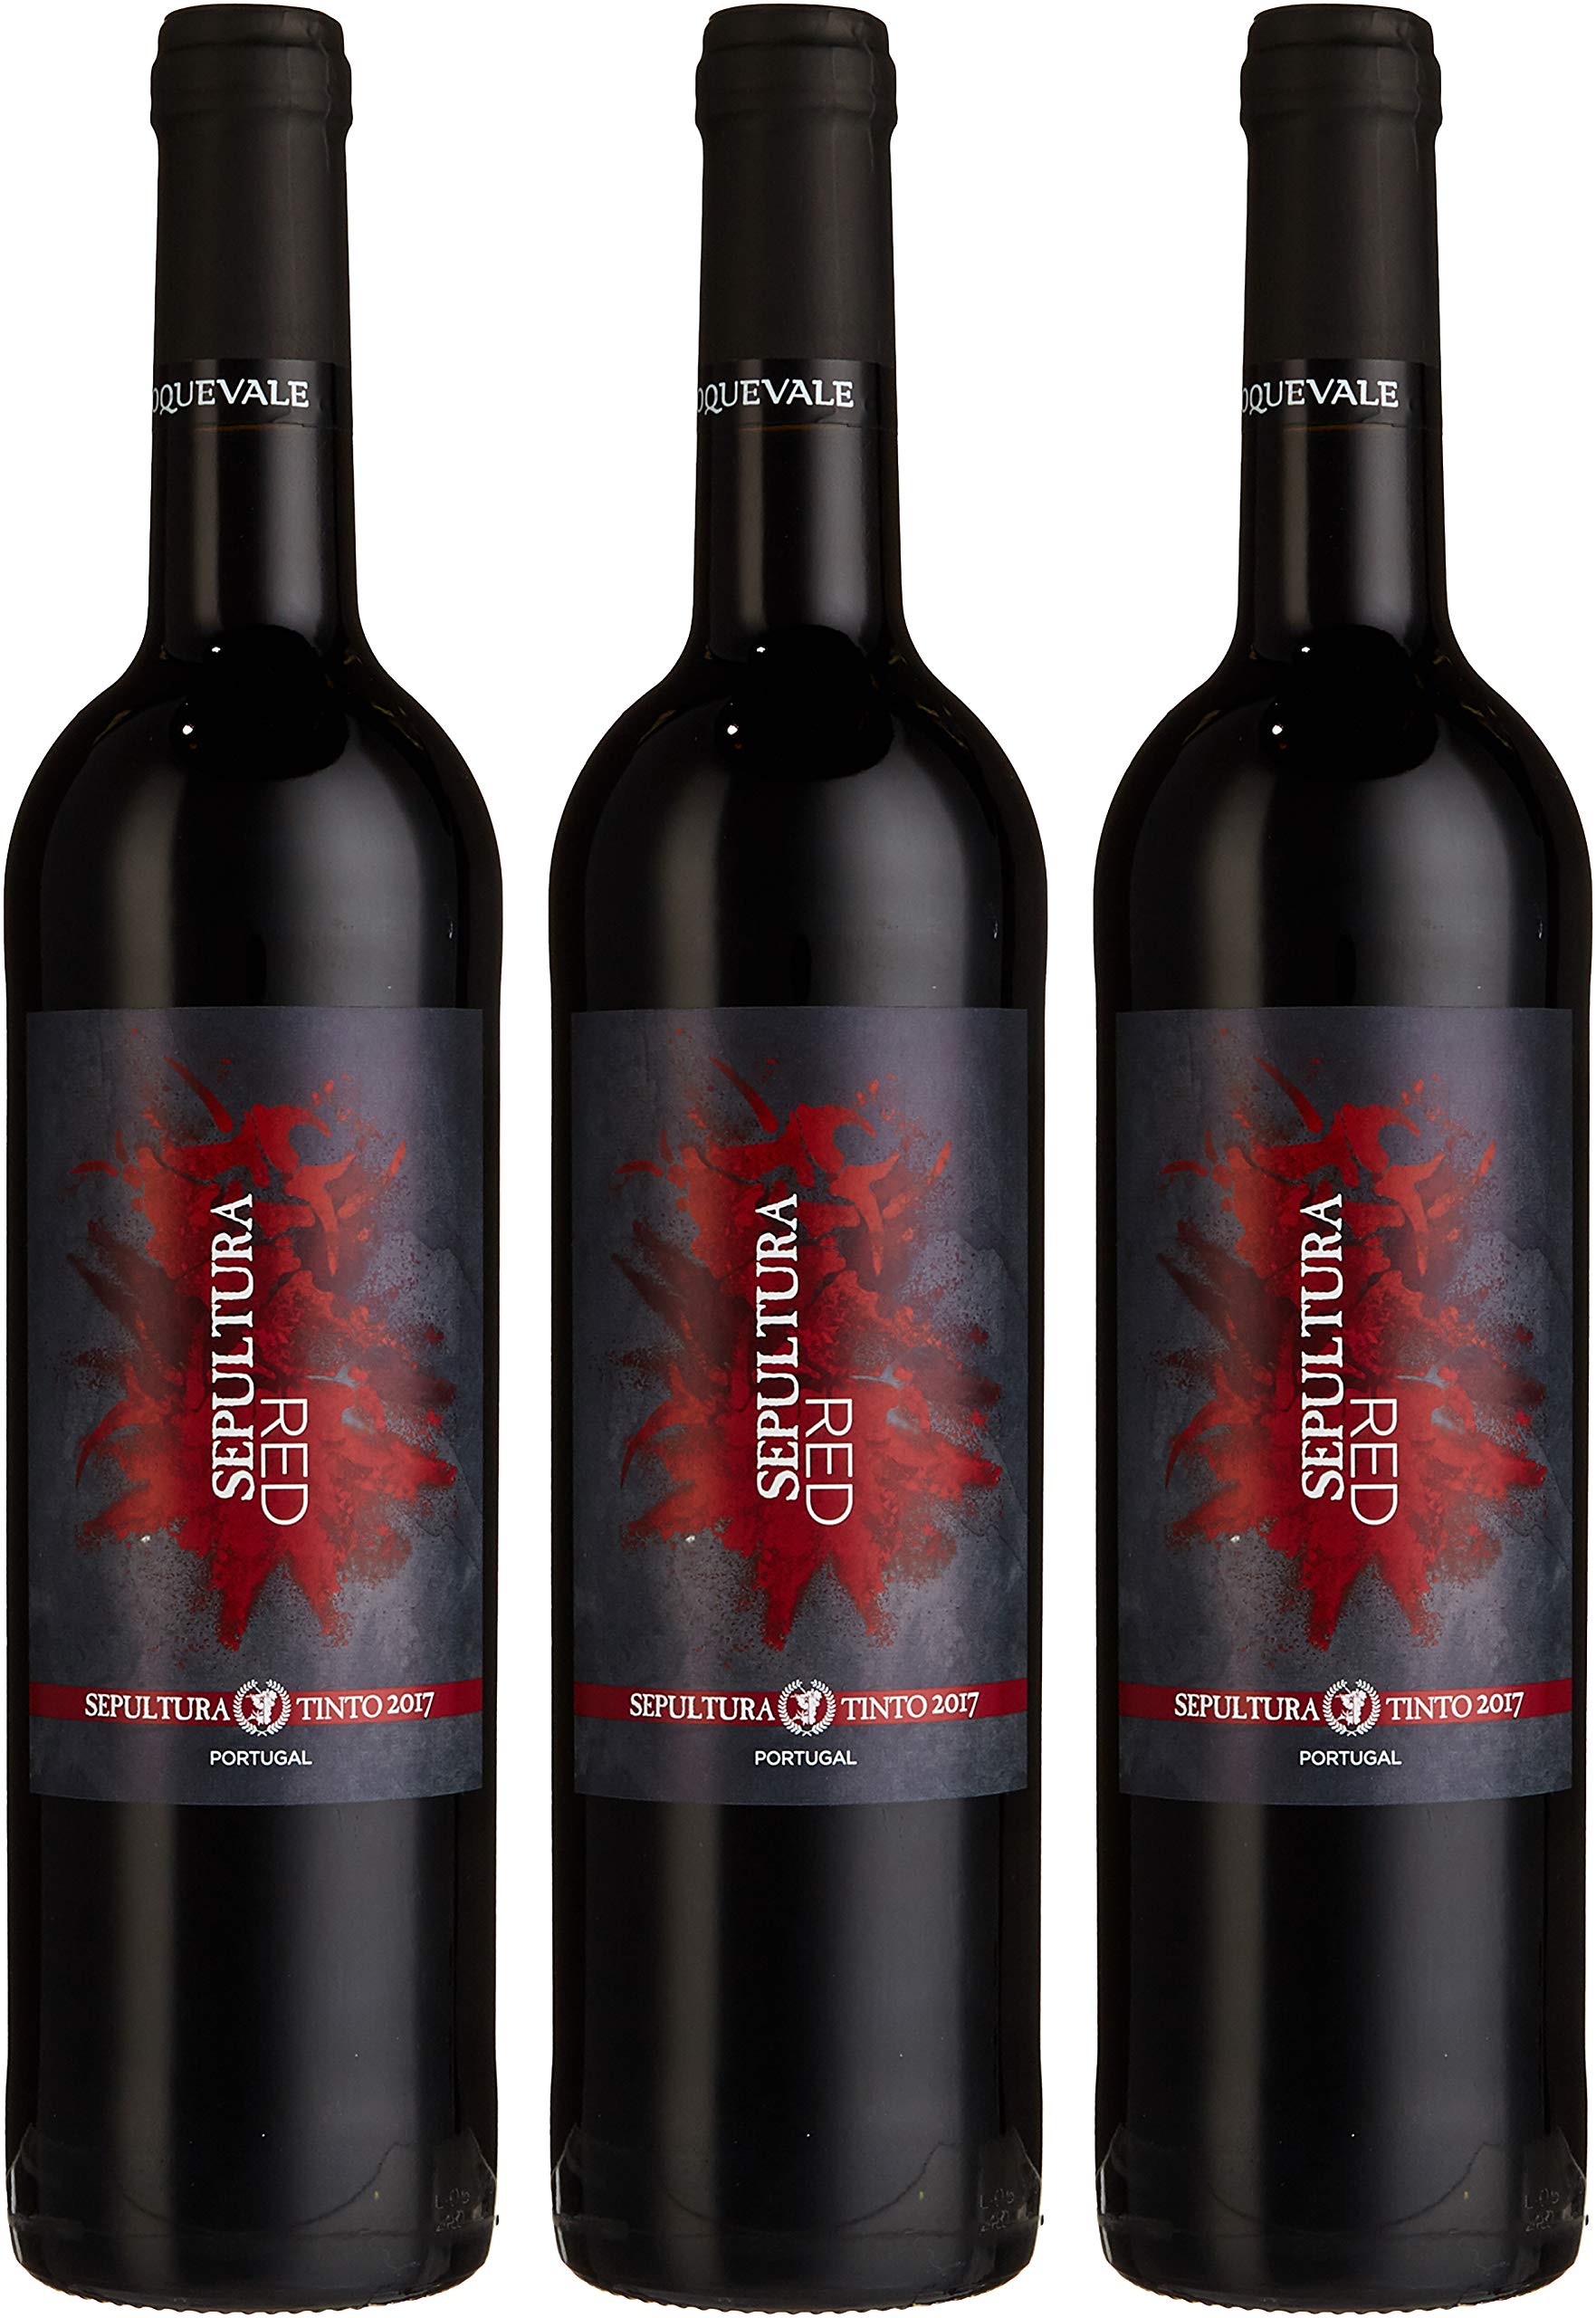 Sepultura fez uma parceria com produtor português para lançar seus vinhos